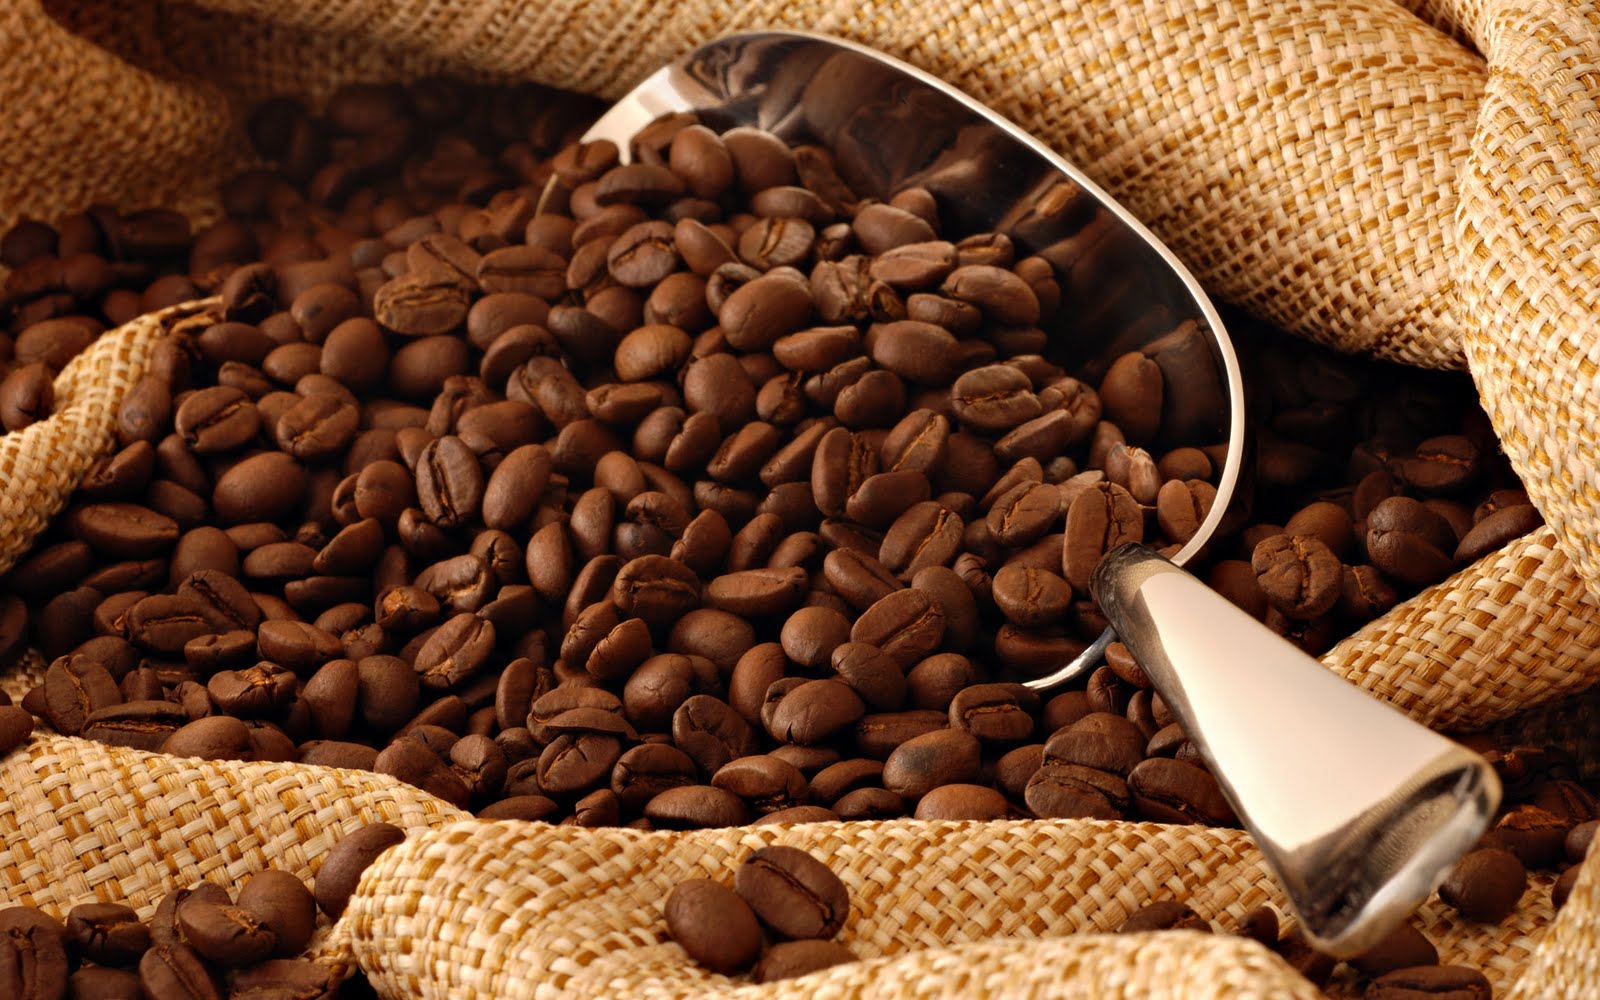 Protegido: “El café: el motor de la sociedad”